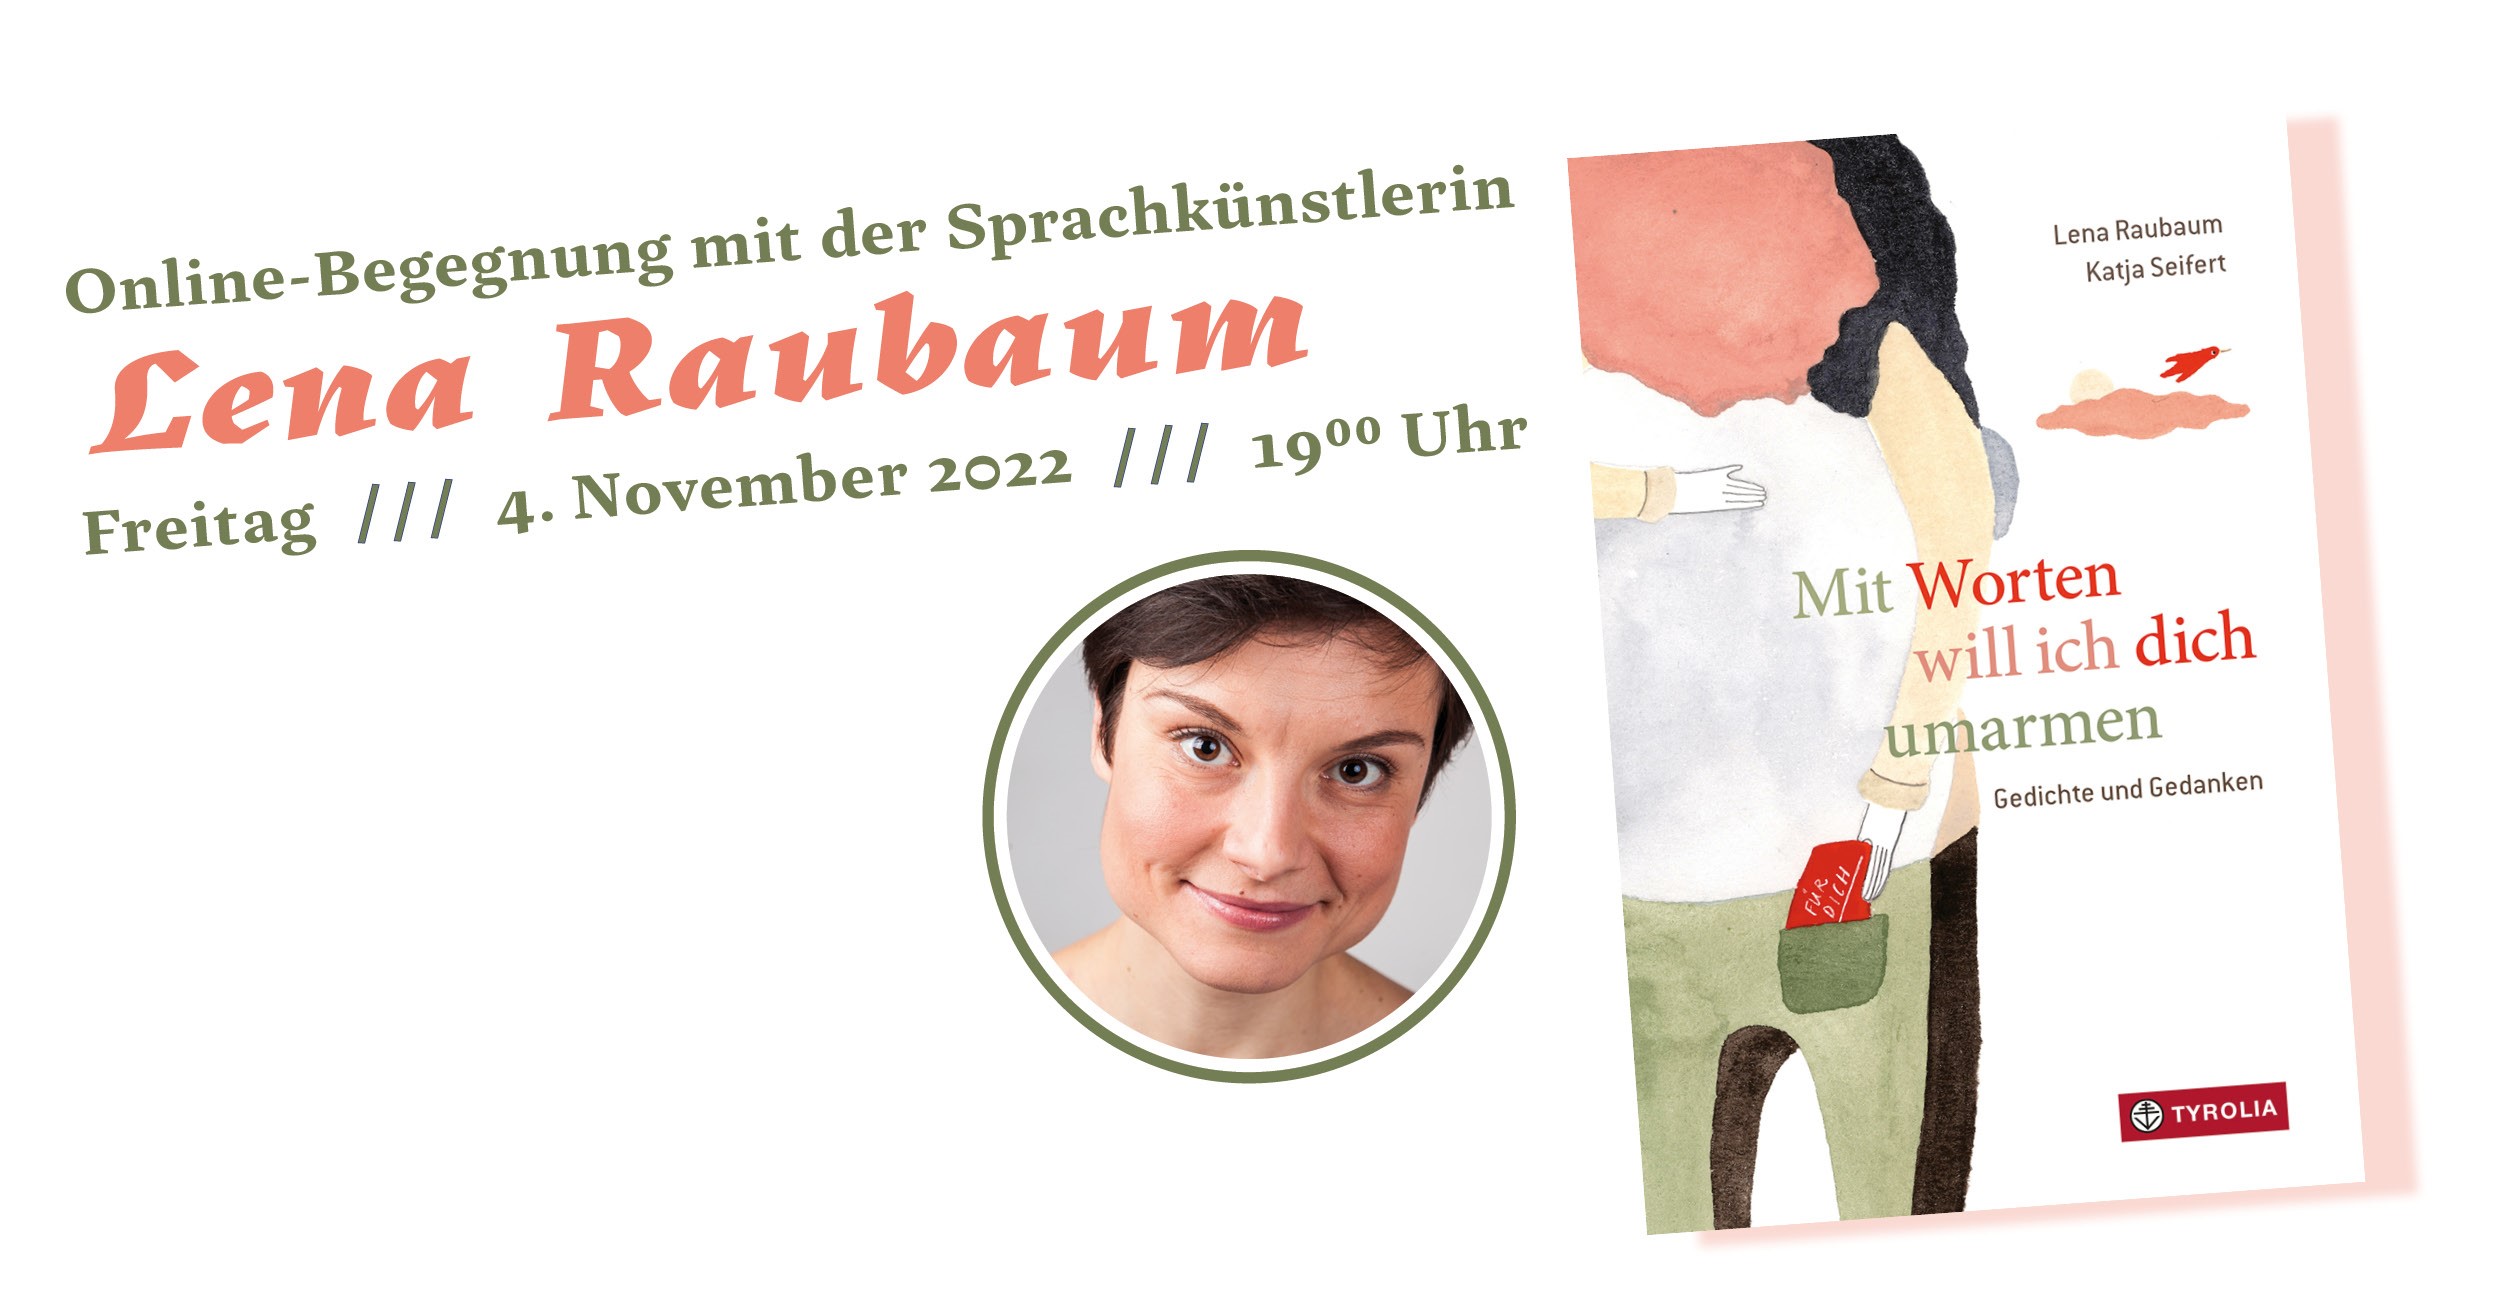 Mit Worten will ich dich umarmen - Onlinelesung mit Lena Raubaum (04.11.2022)